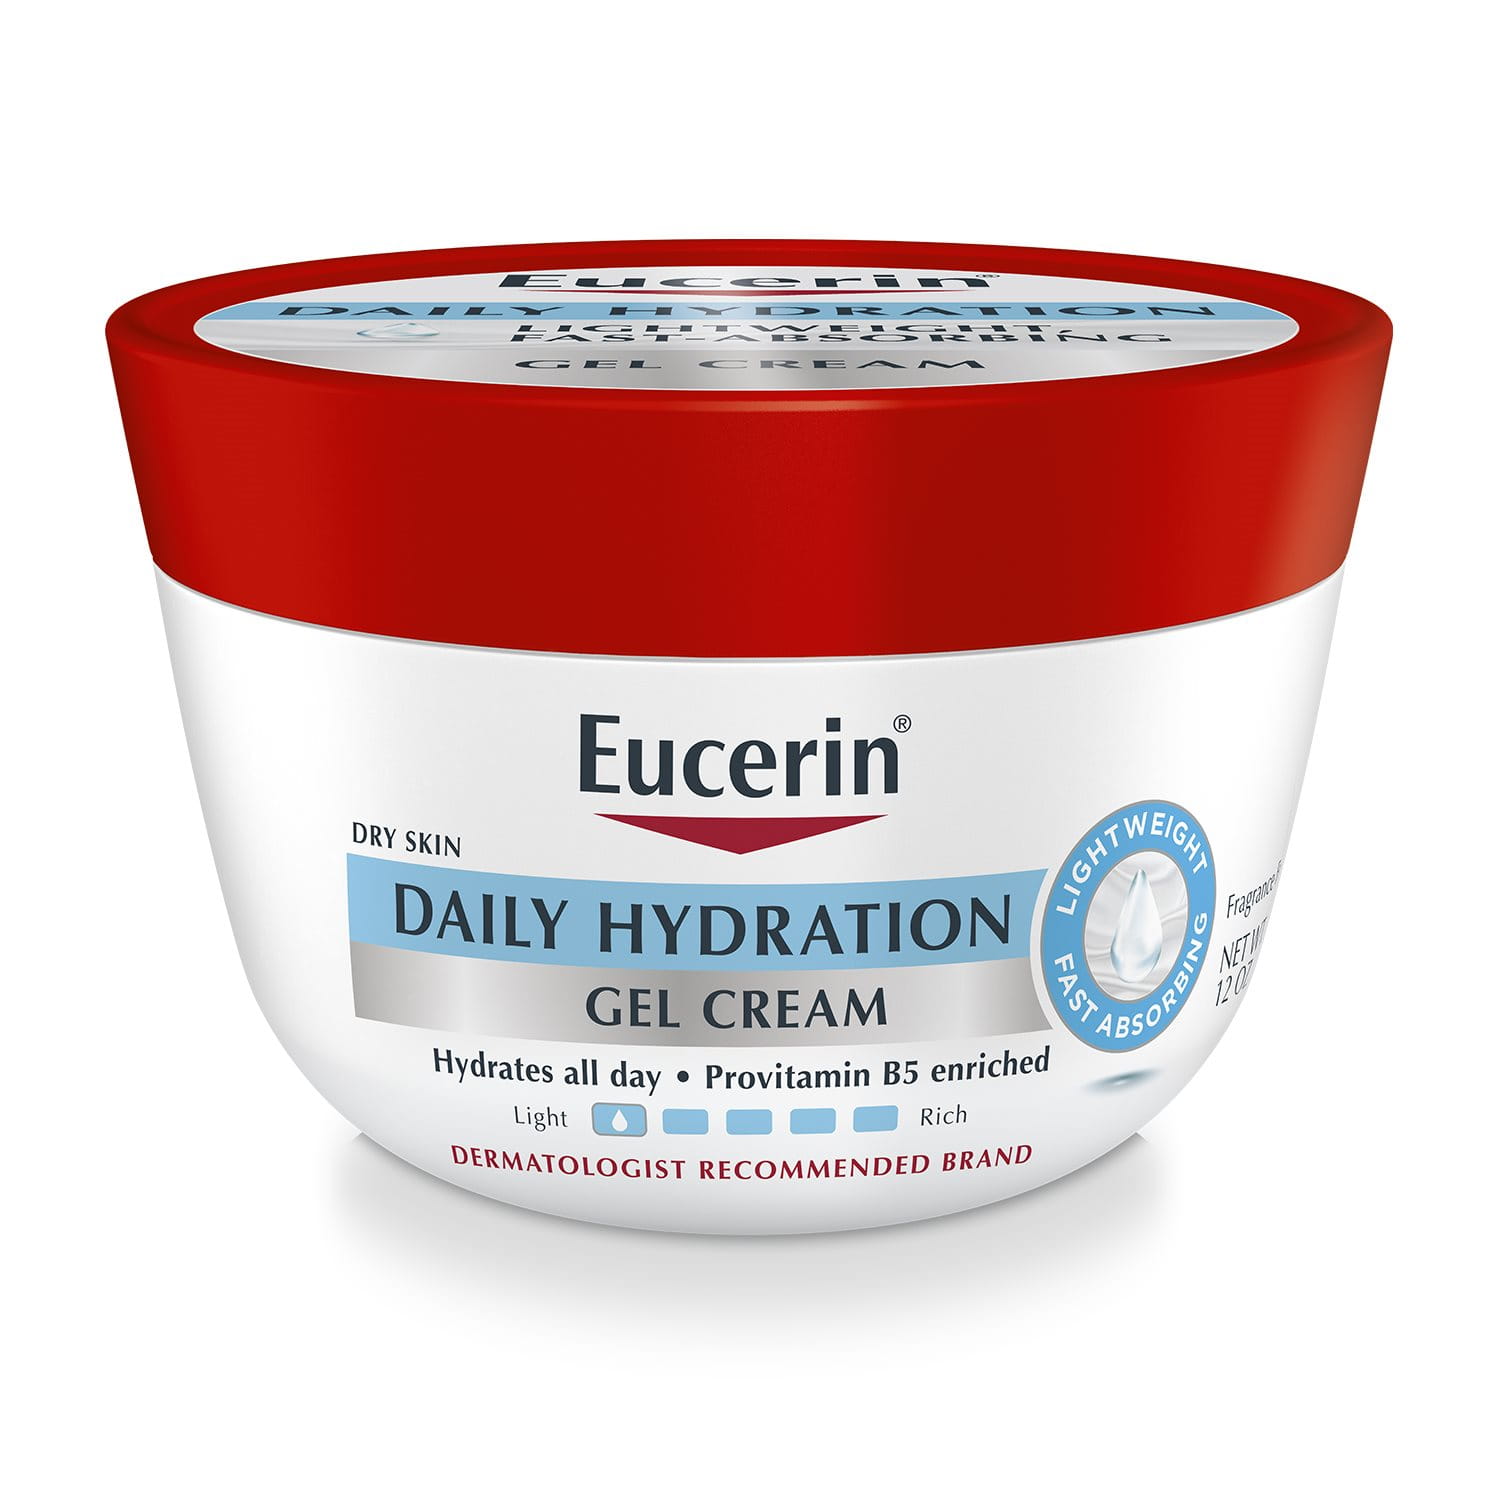 Daily Hydration Gel Cream